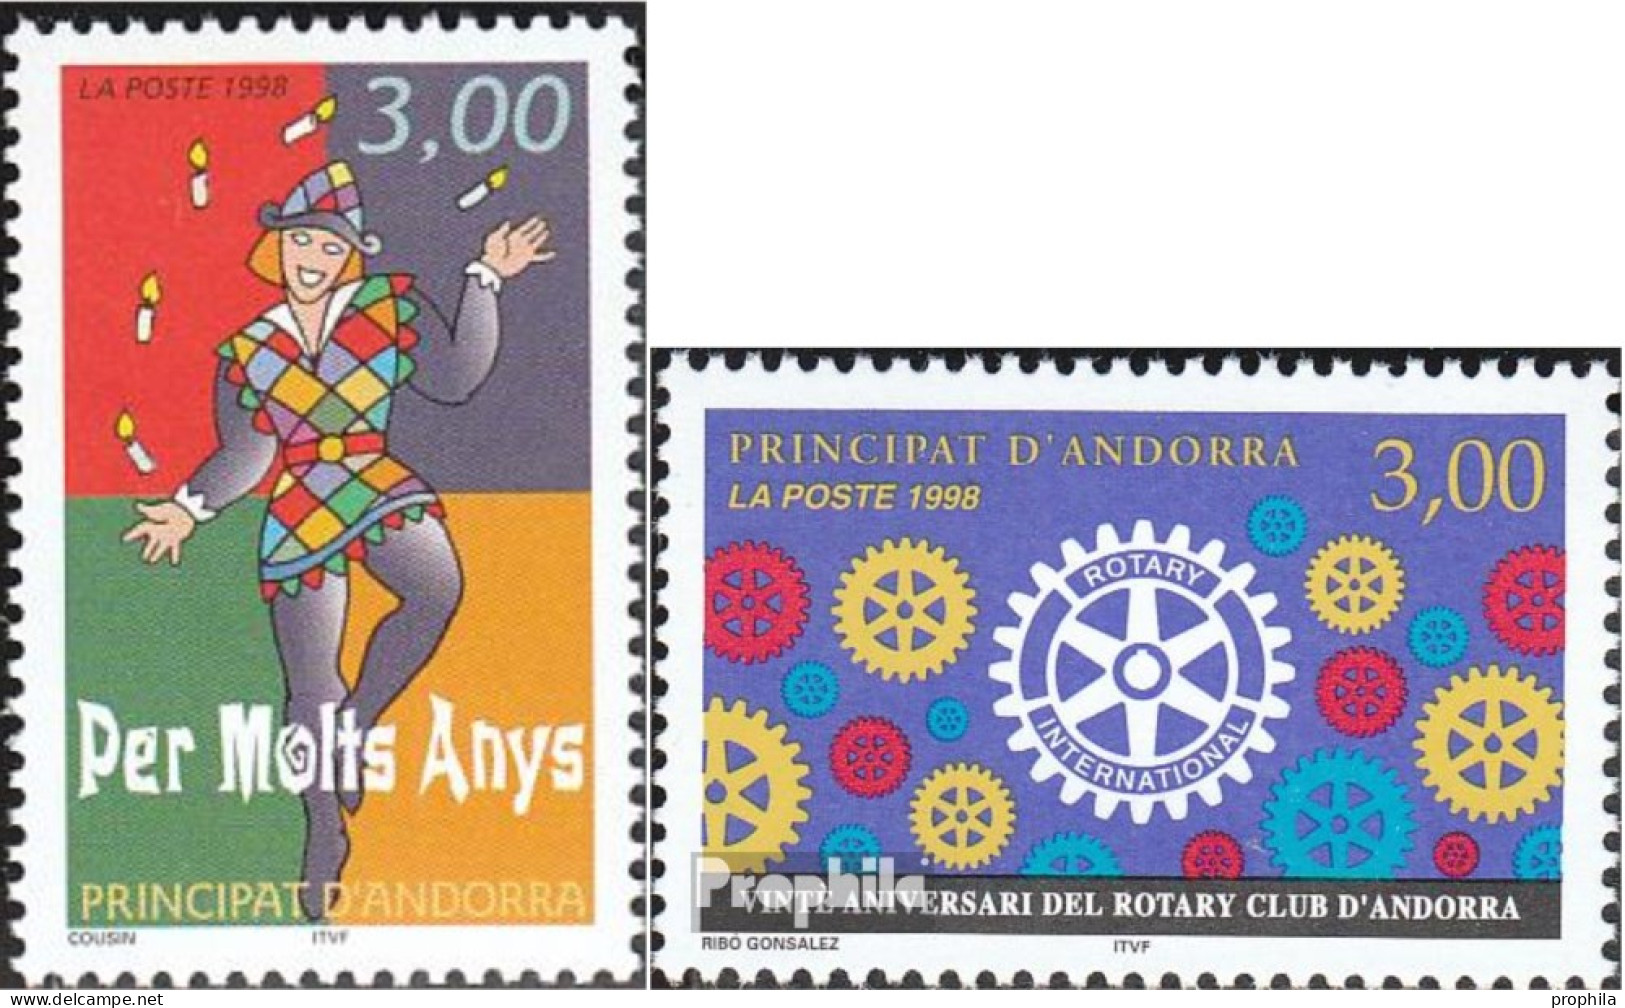 Andorra - Französische Post 518,522 (kompl.Ausg.) Postfrisch 1998 Grußmarke, Rotary - Markenheftchen